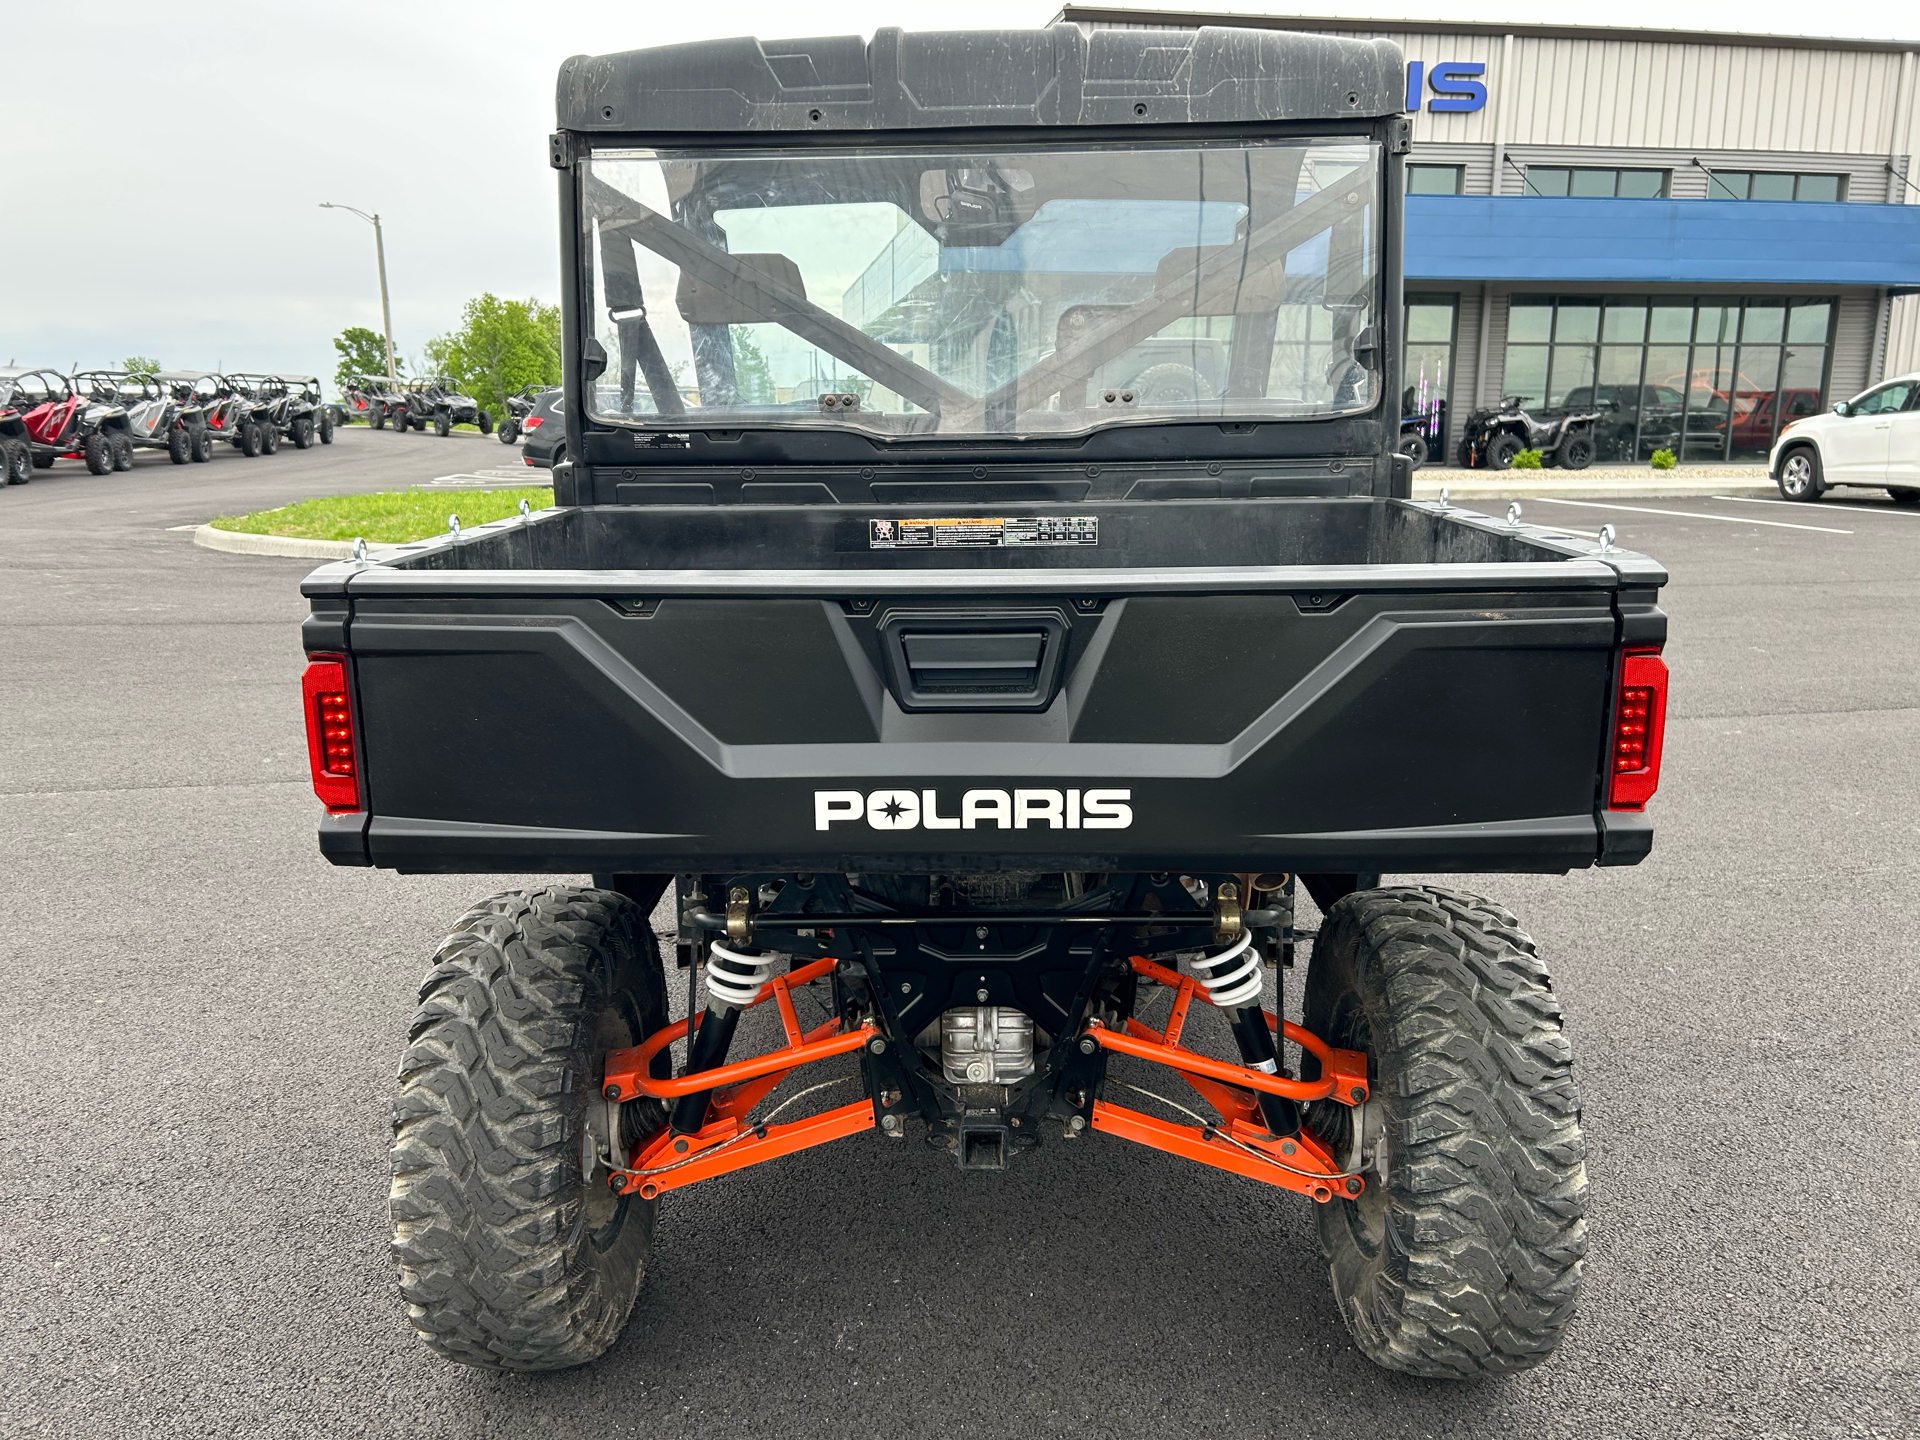 2019 Polaris Ranger XP 900 EPS in Sidney, Ohio - Photo 4